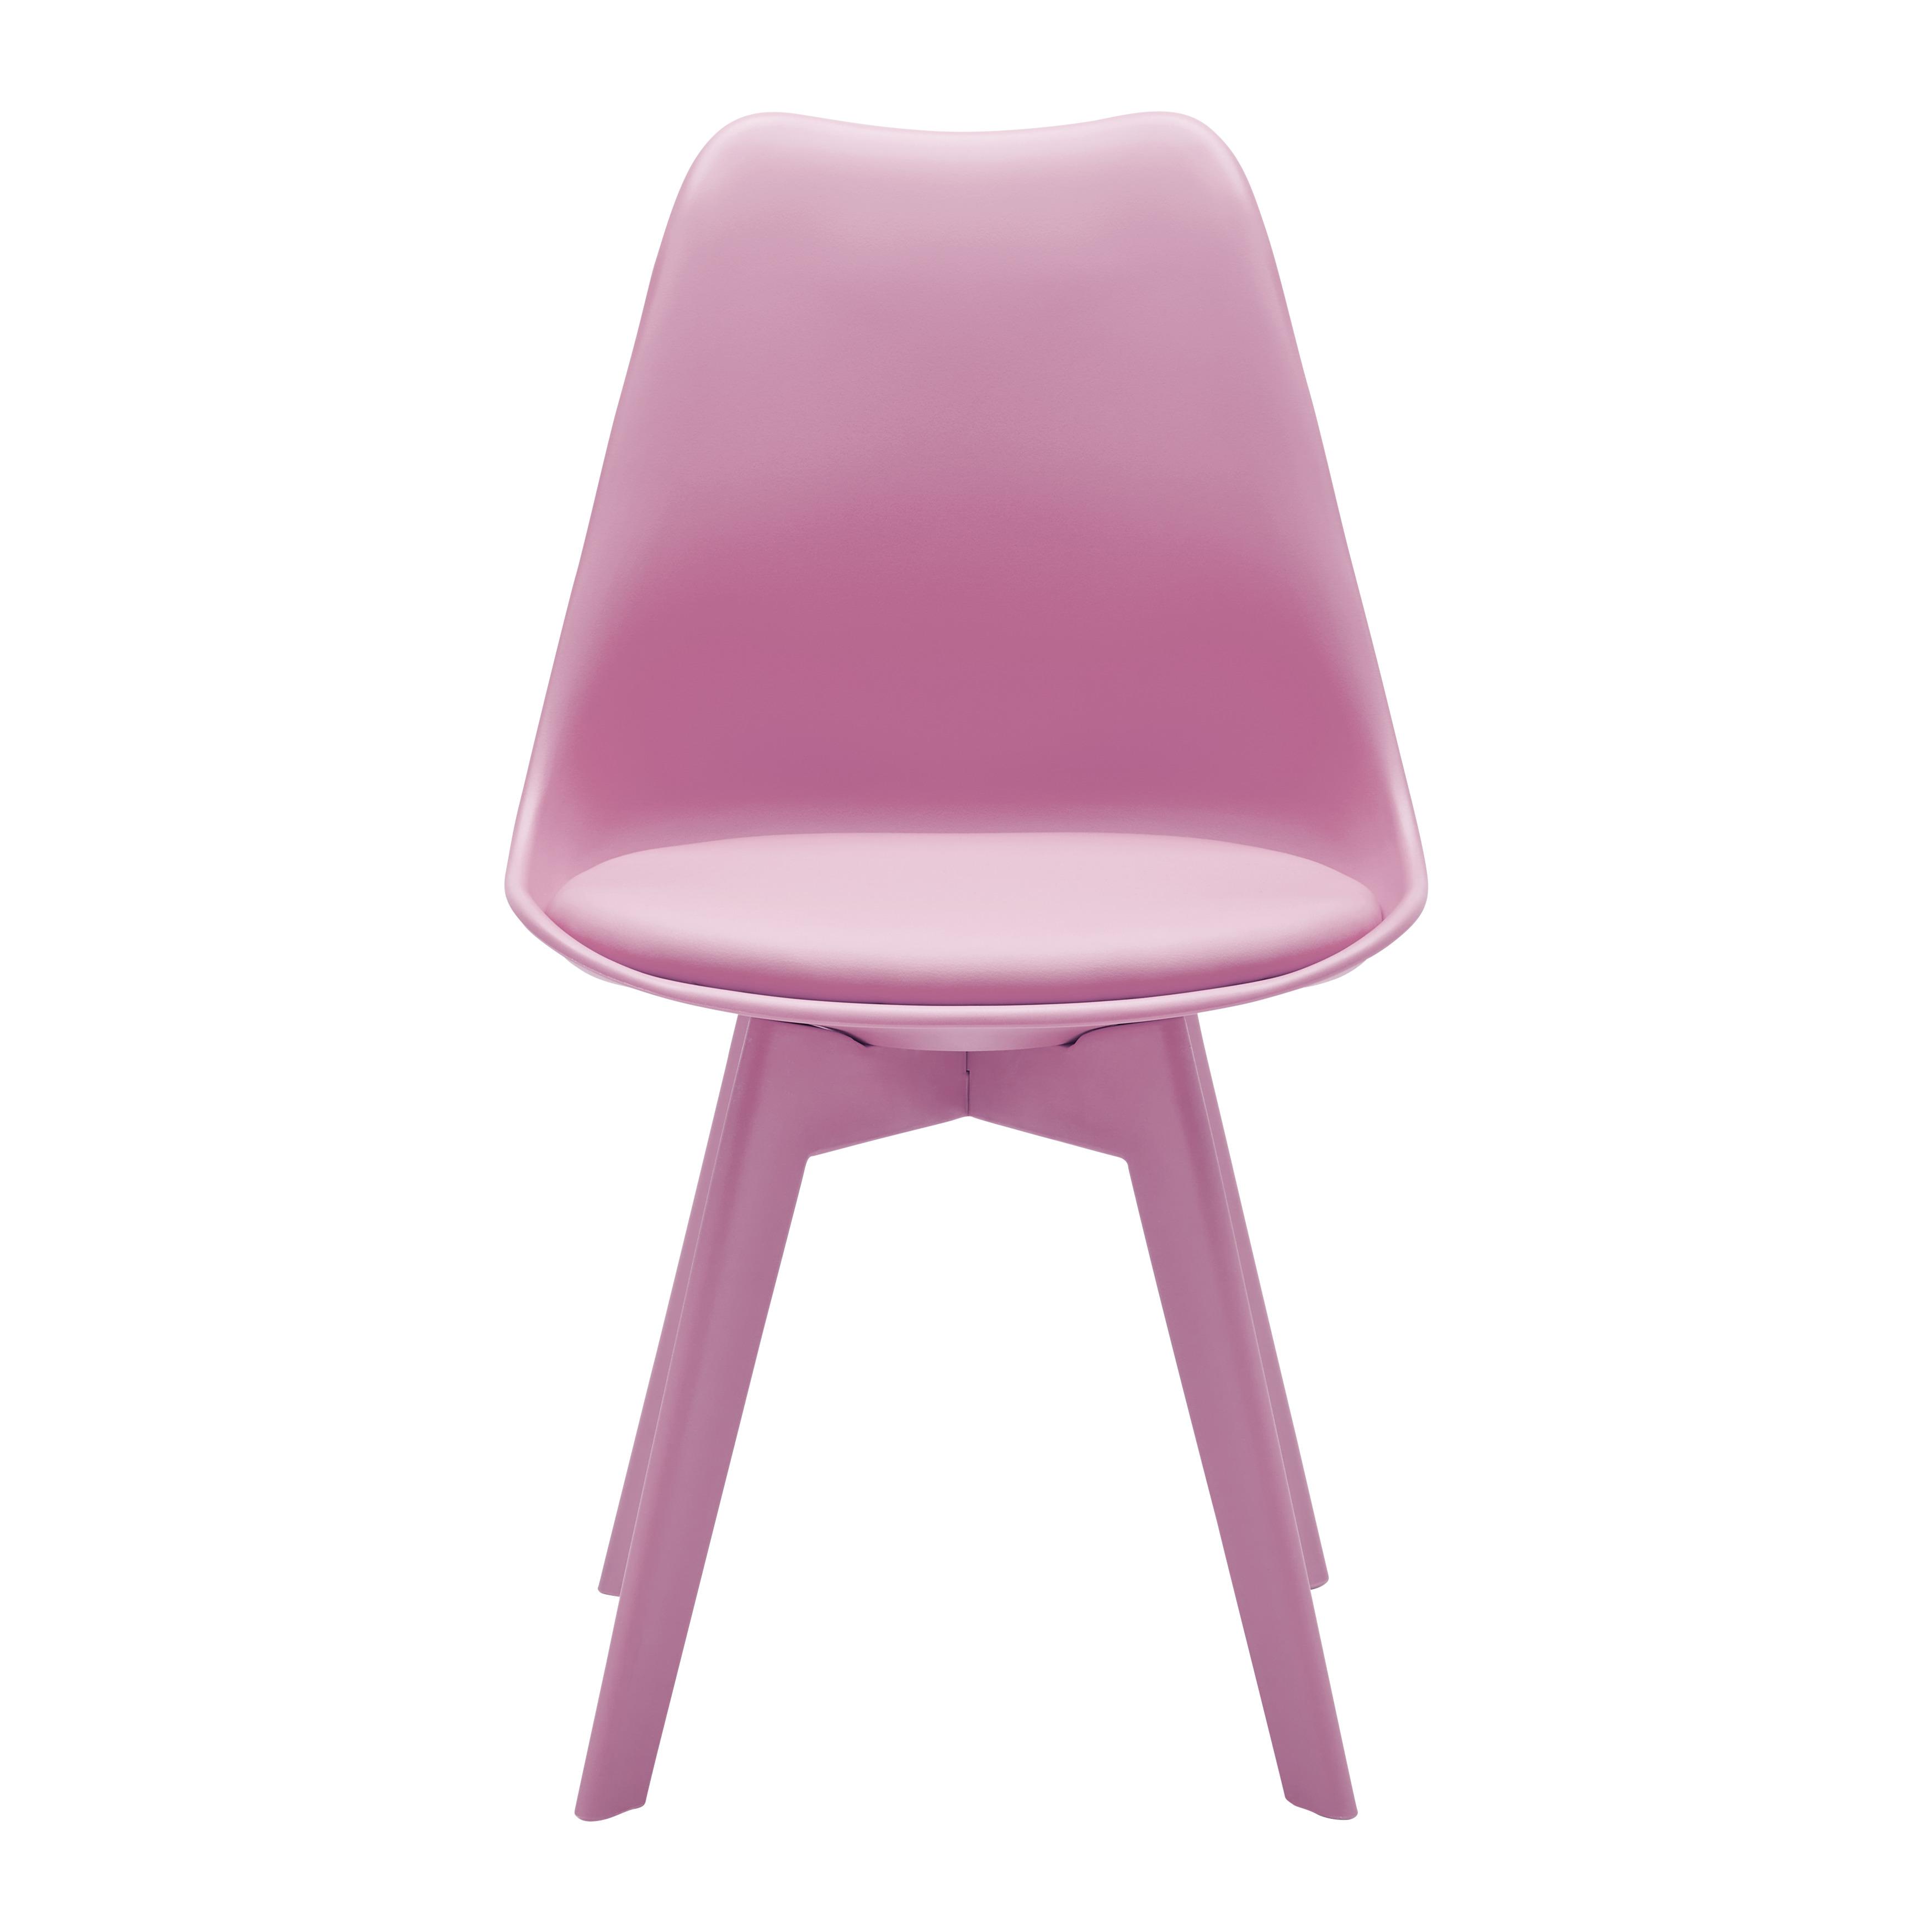 Stuhl "Mia", Lederlook, pink, Gepolstert - Pink, MODERN, Kunststoff/Textil (50/84/54cm) - Bessagi Home